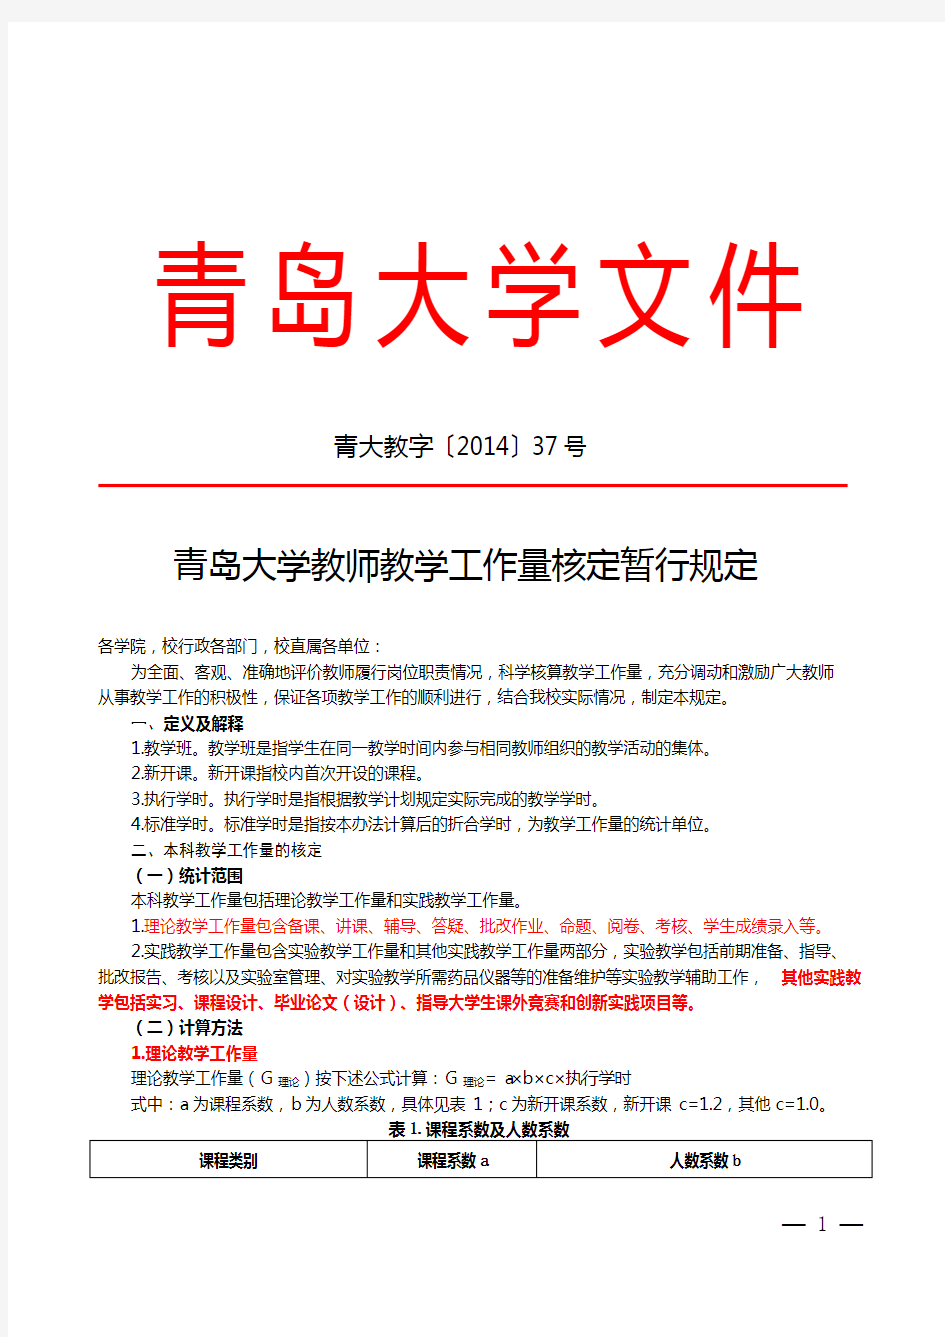 青岛大学教师教学工作量核定暂行规定-青大教字(2014)37号-201505